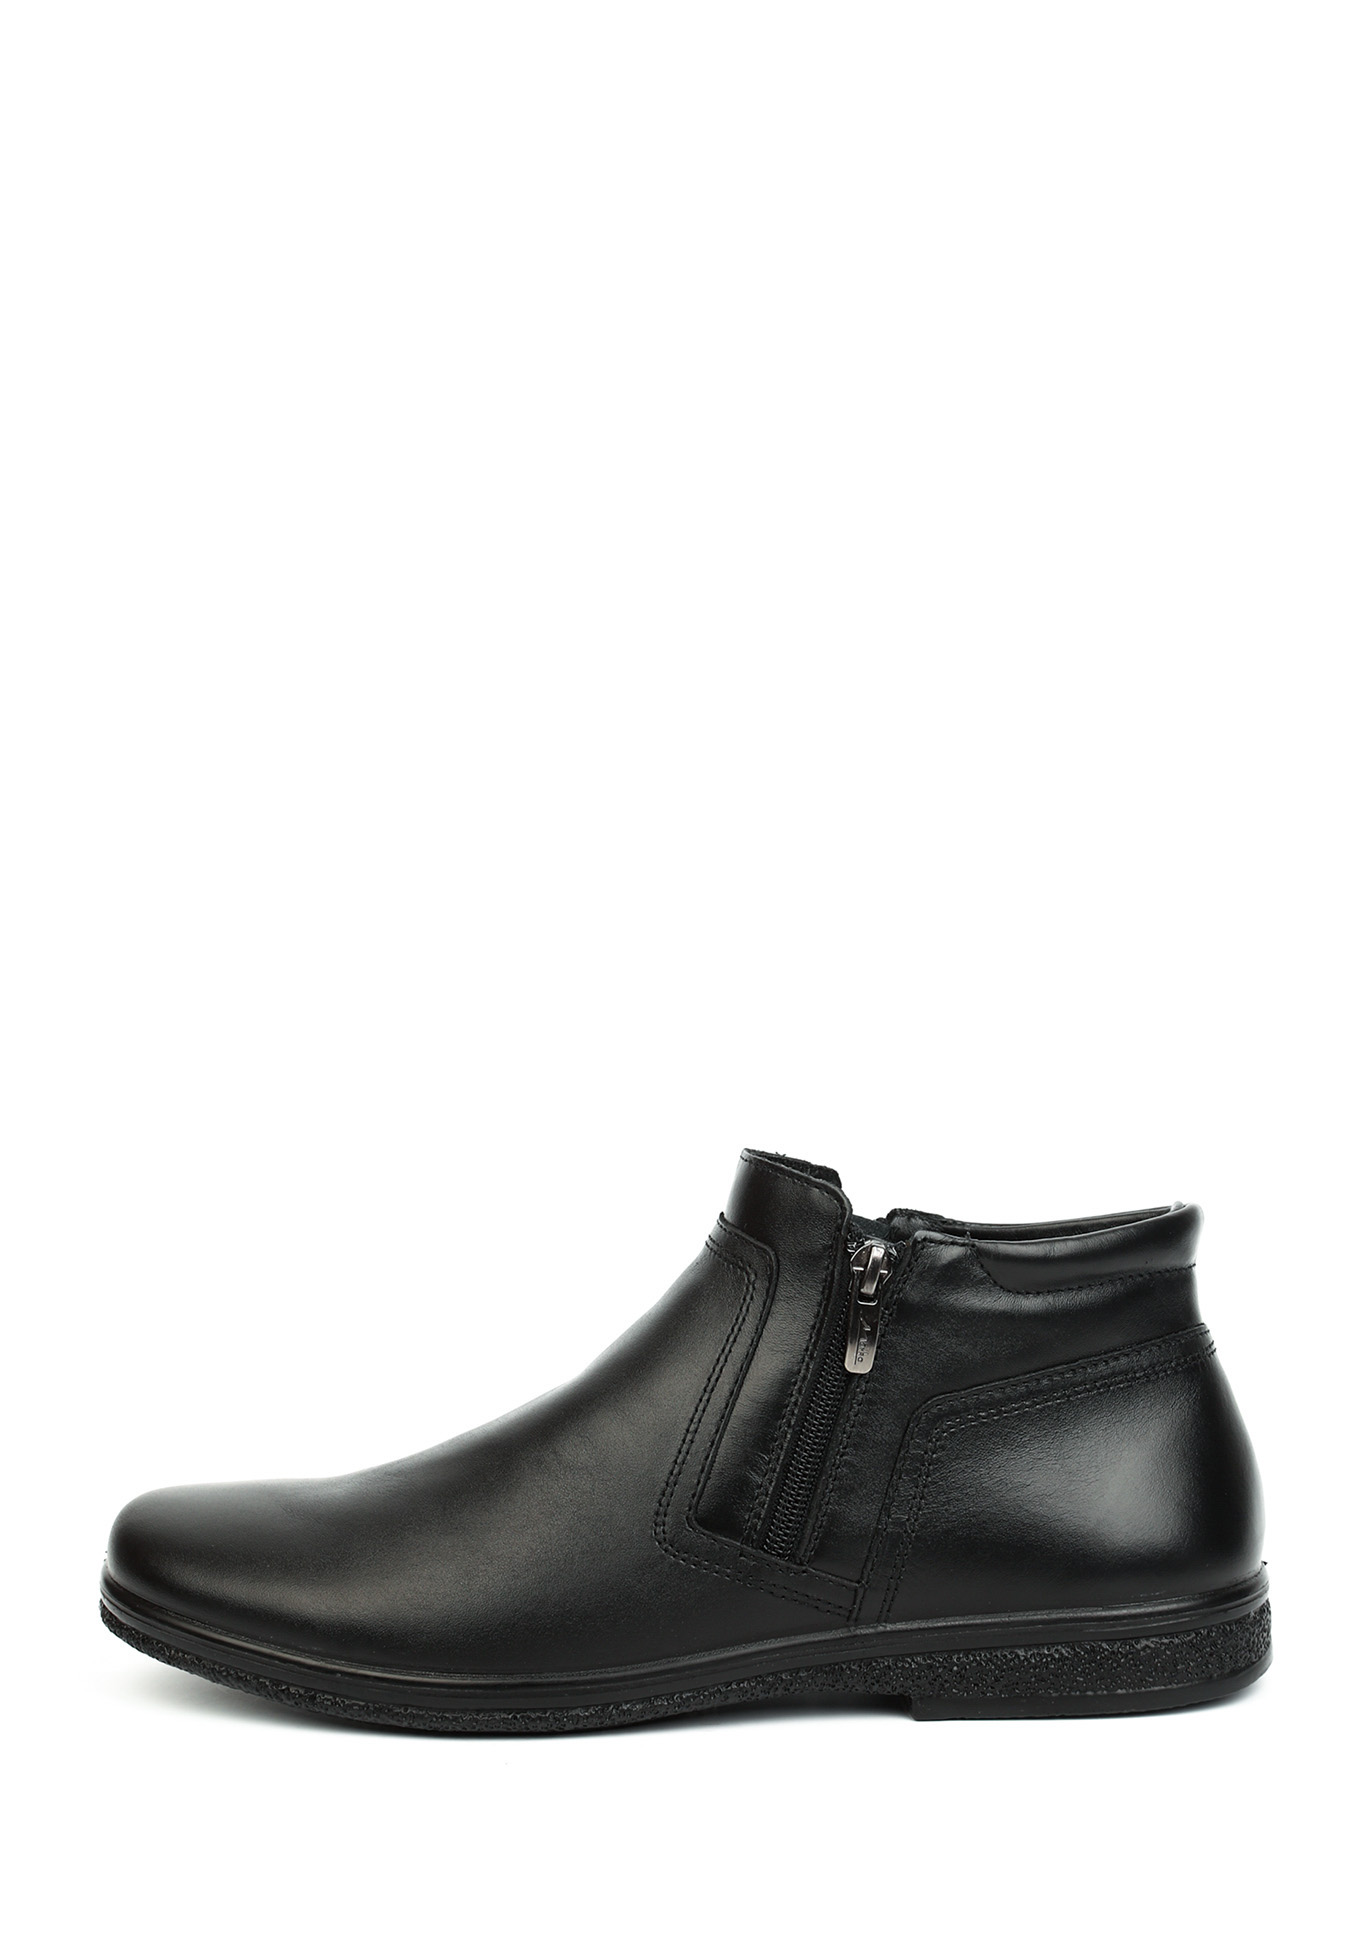 Ботинки мужские "Стеффан" Marko, размер 40, цвет черный - фото 2